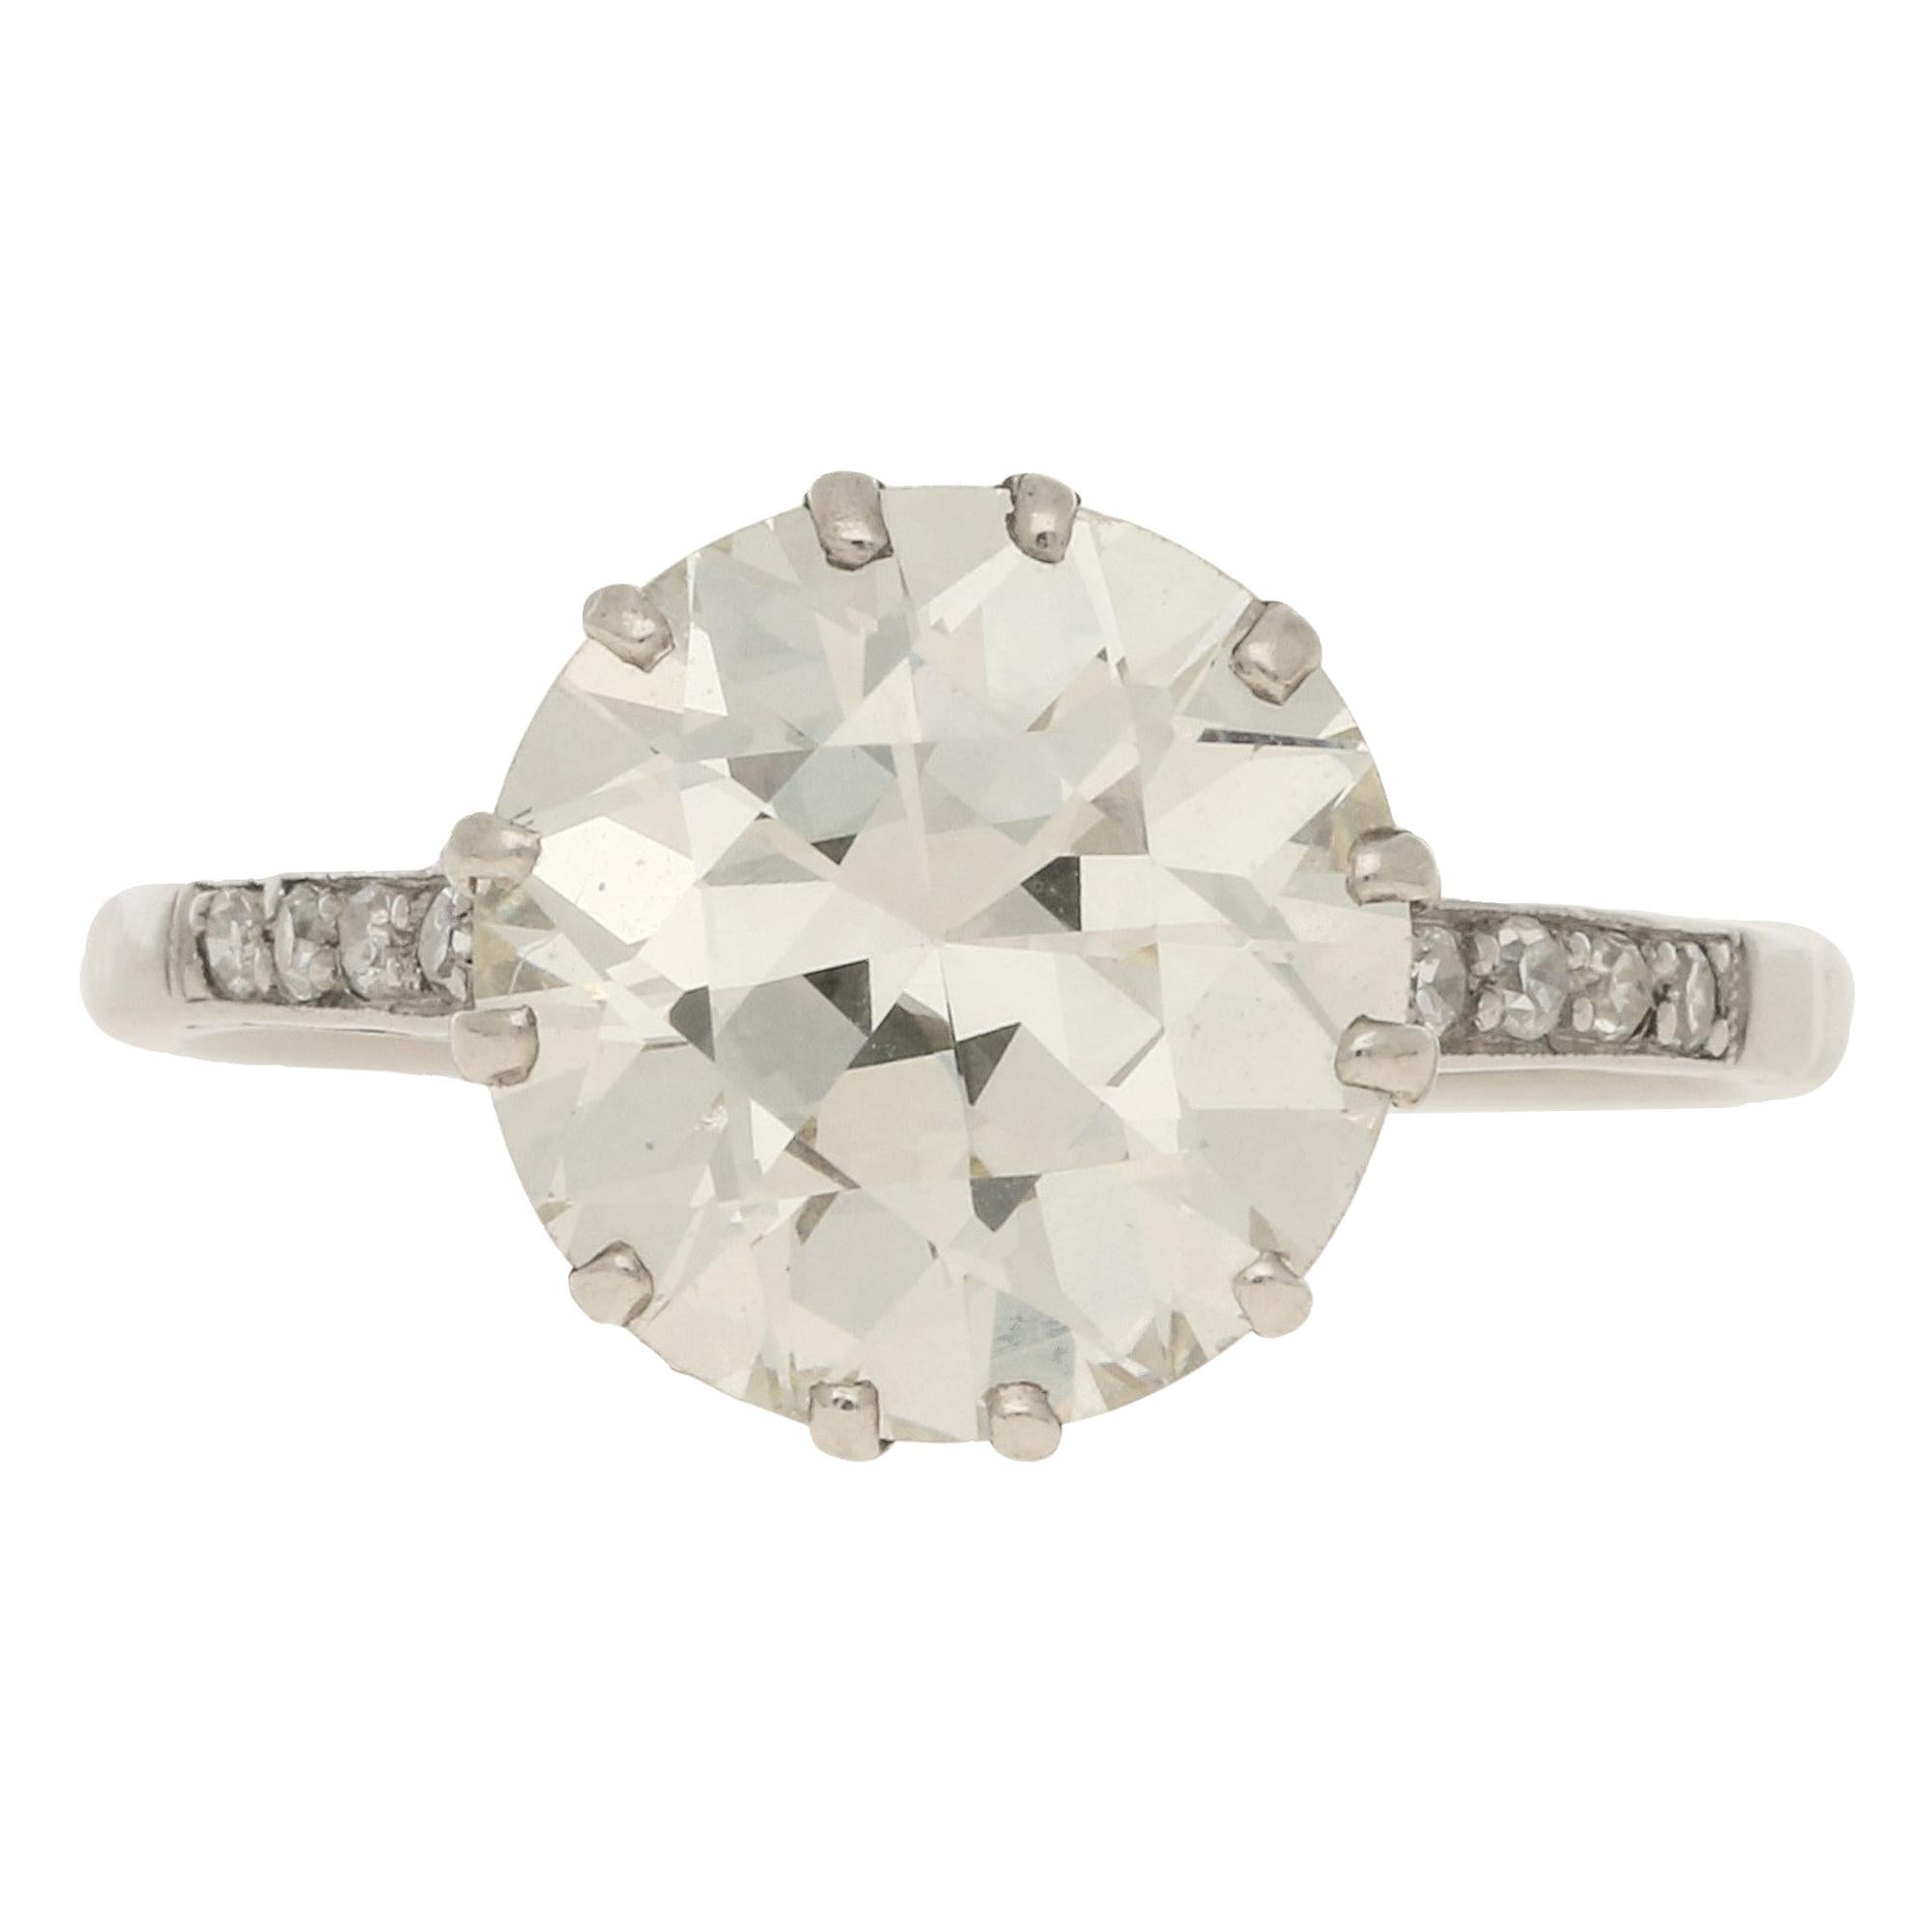 3.95 Carat Diamond Solitaire Engagement Ring Set in Platinum